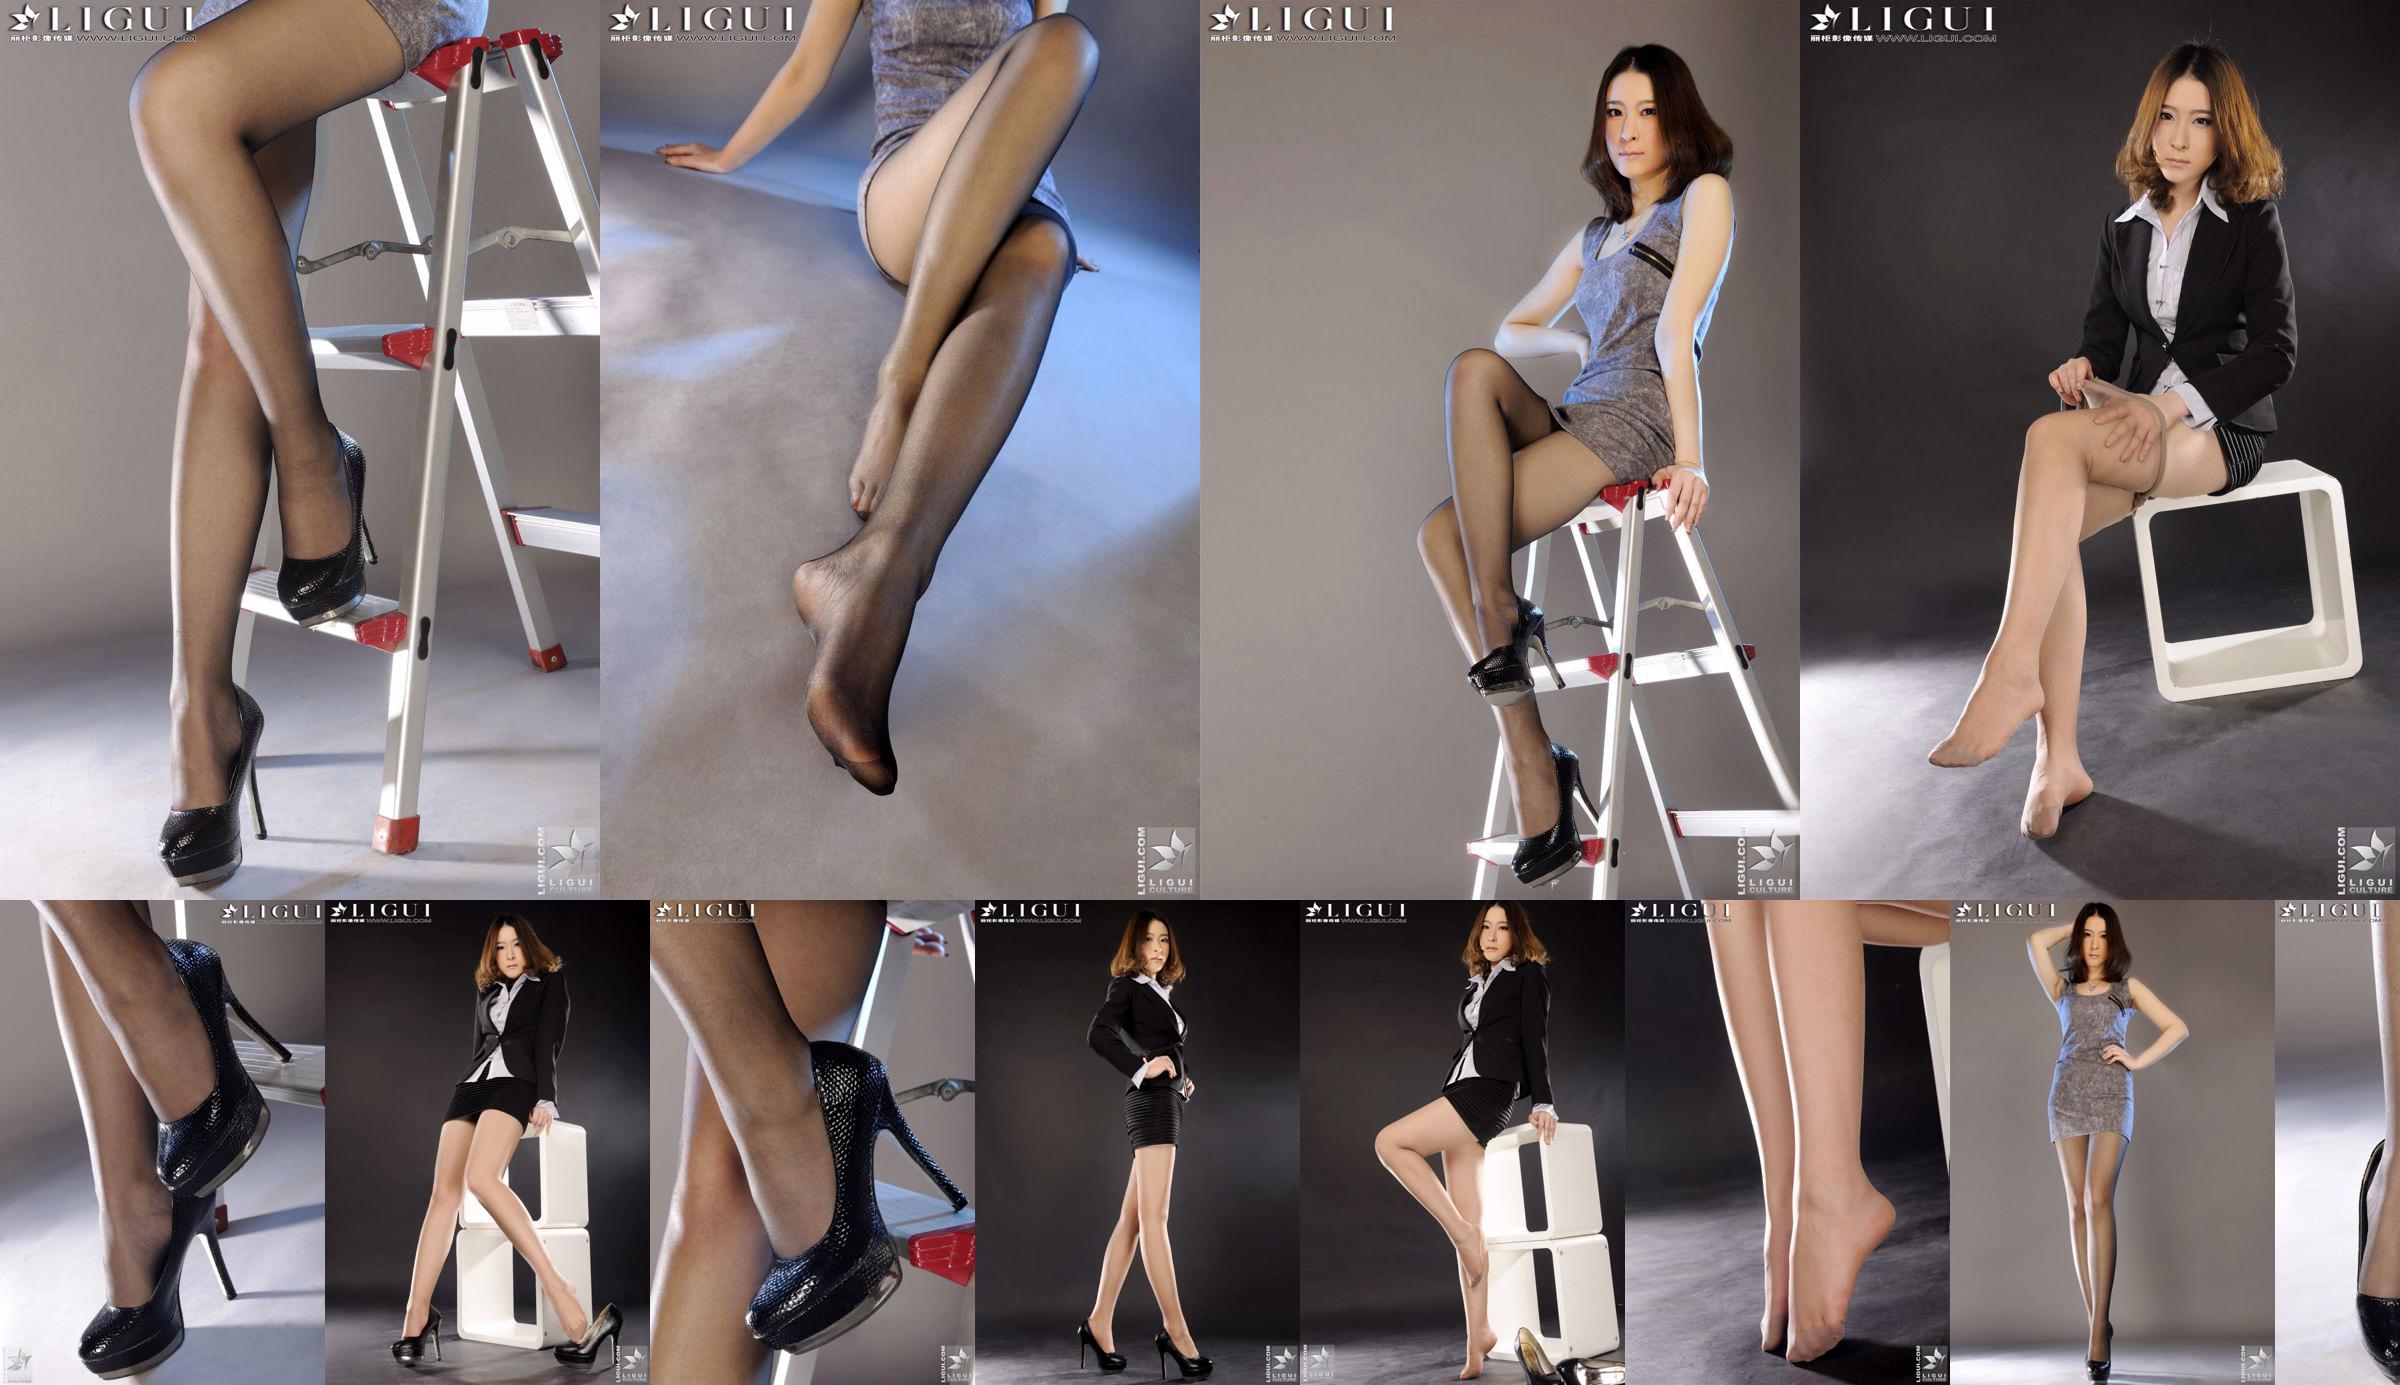 Модель LiLy "Ross OL Beauty Foot" [丽 柜 LiGui] Красивые ноги и нефритовая ступня. Фотография. No.610843 Страница 1